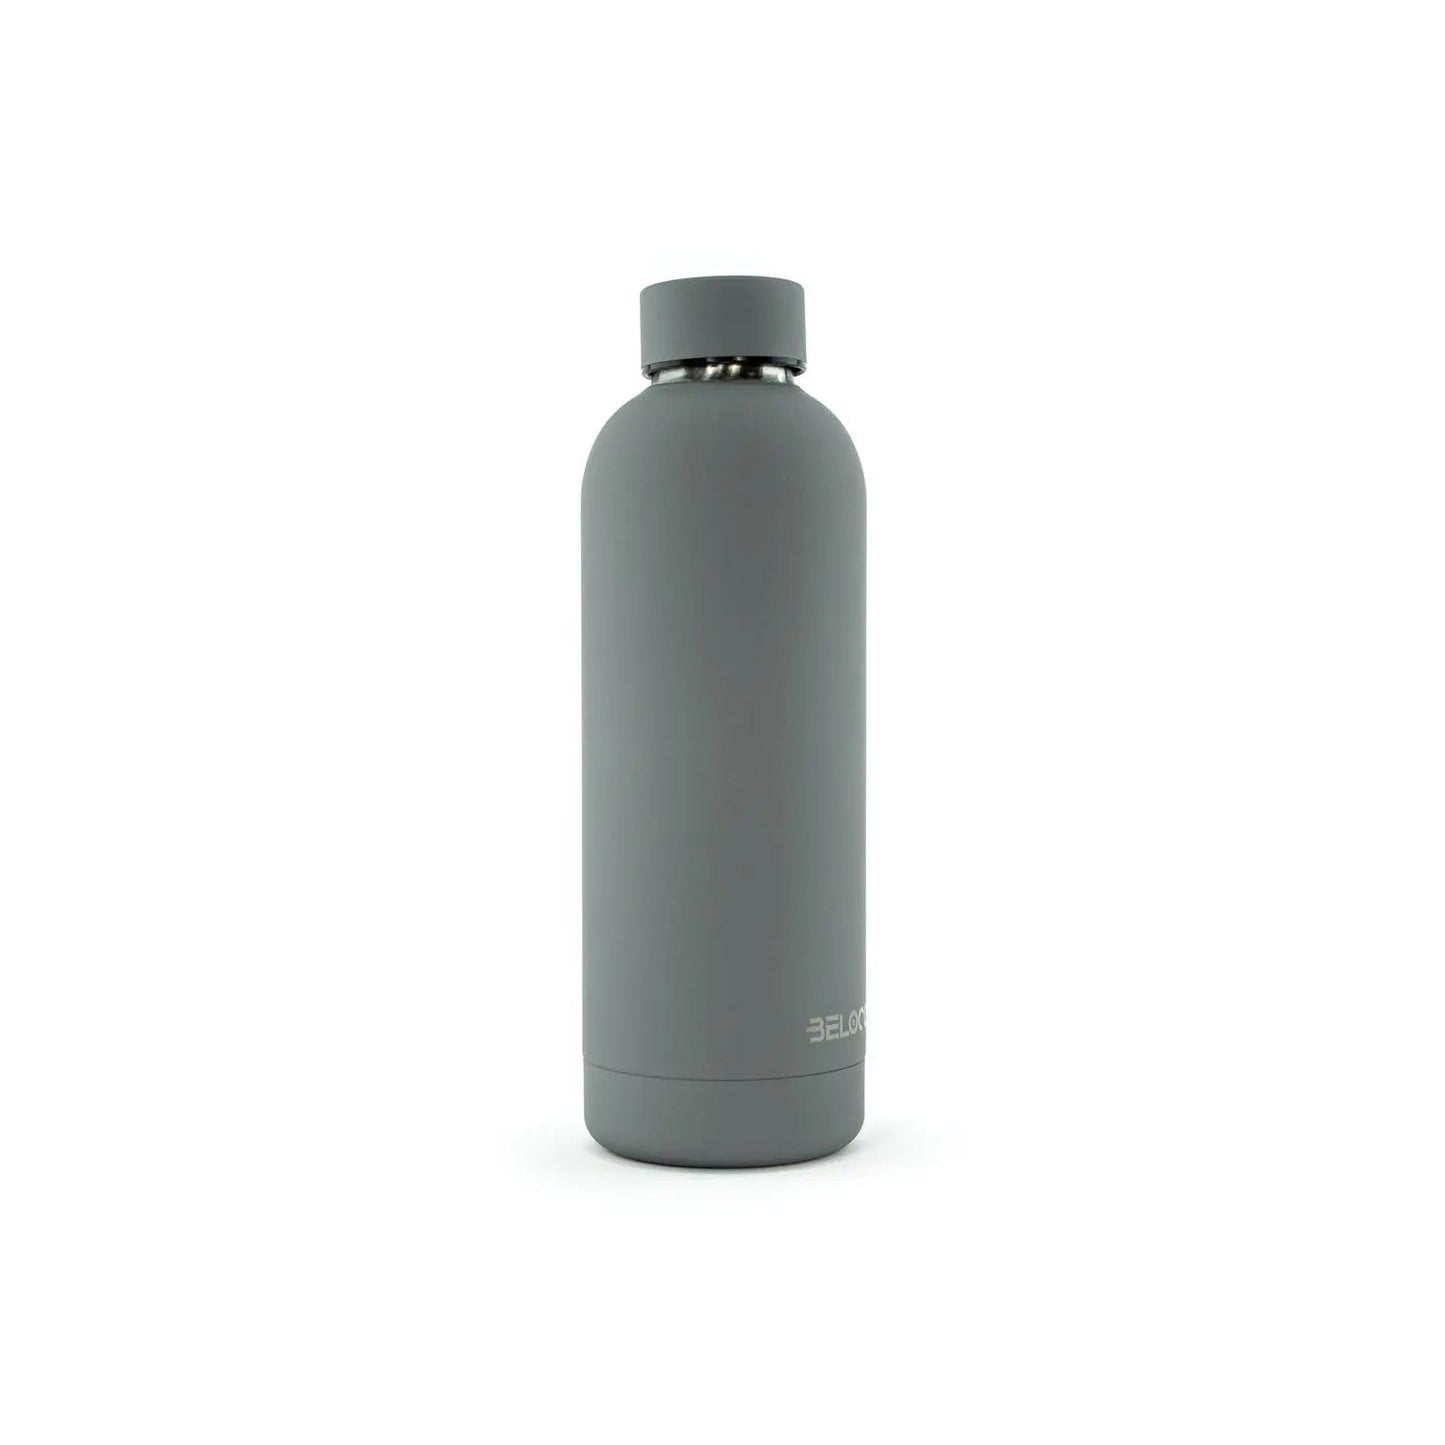 Classiq Grigio bottle - 500 ml - BeLoco